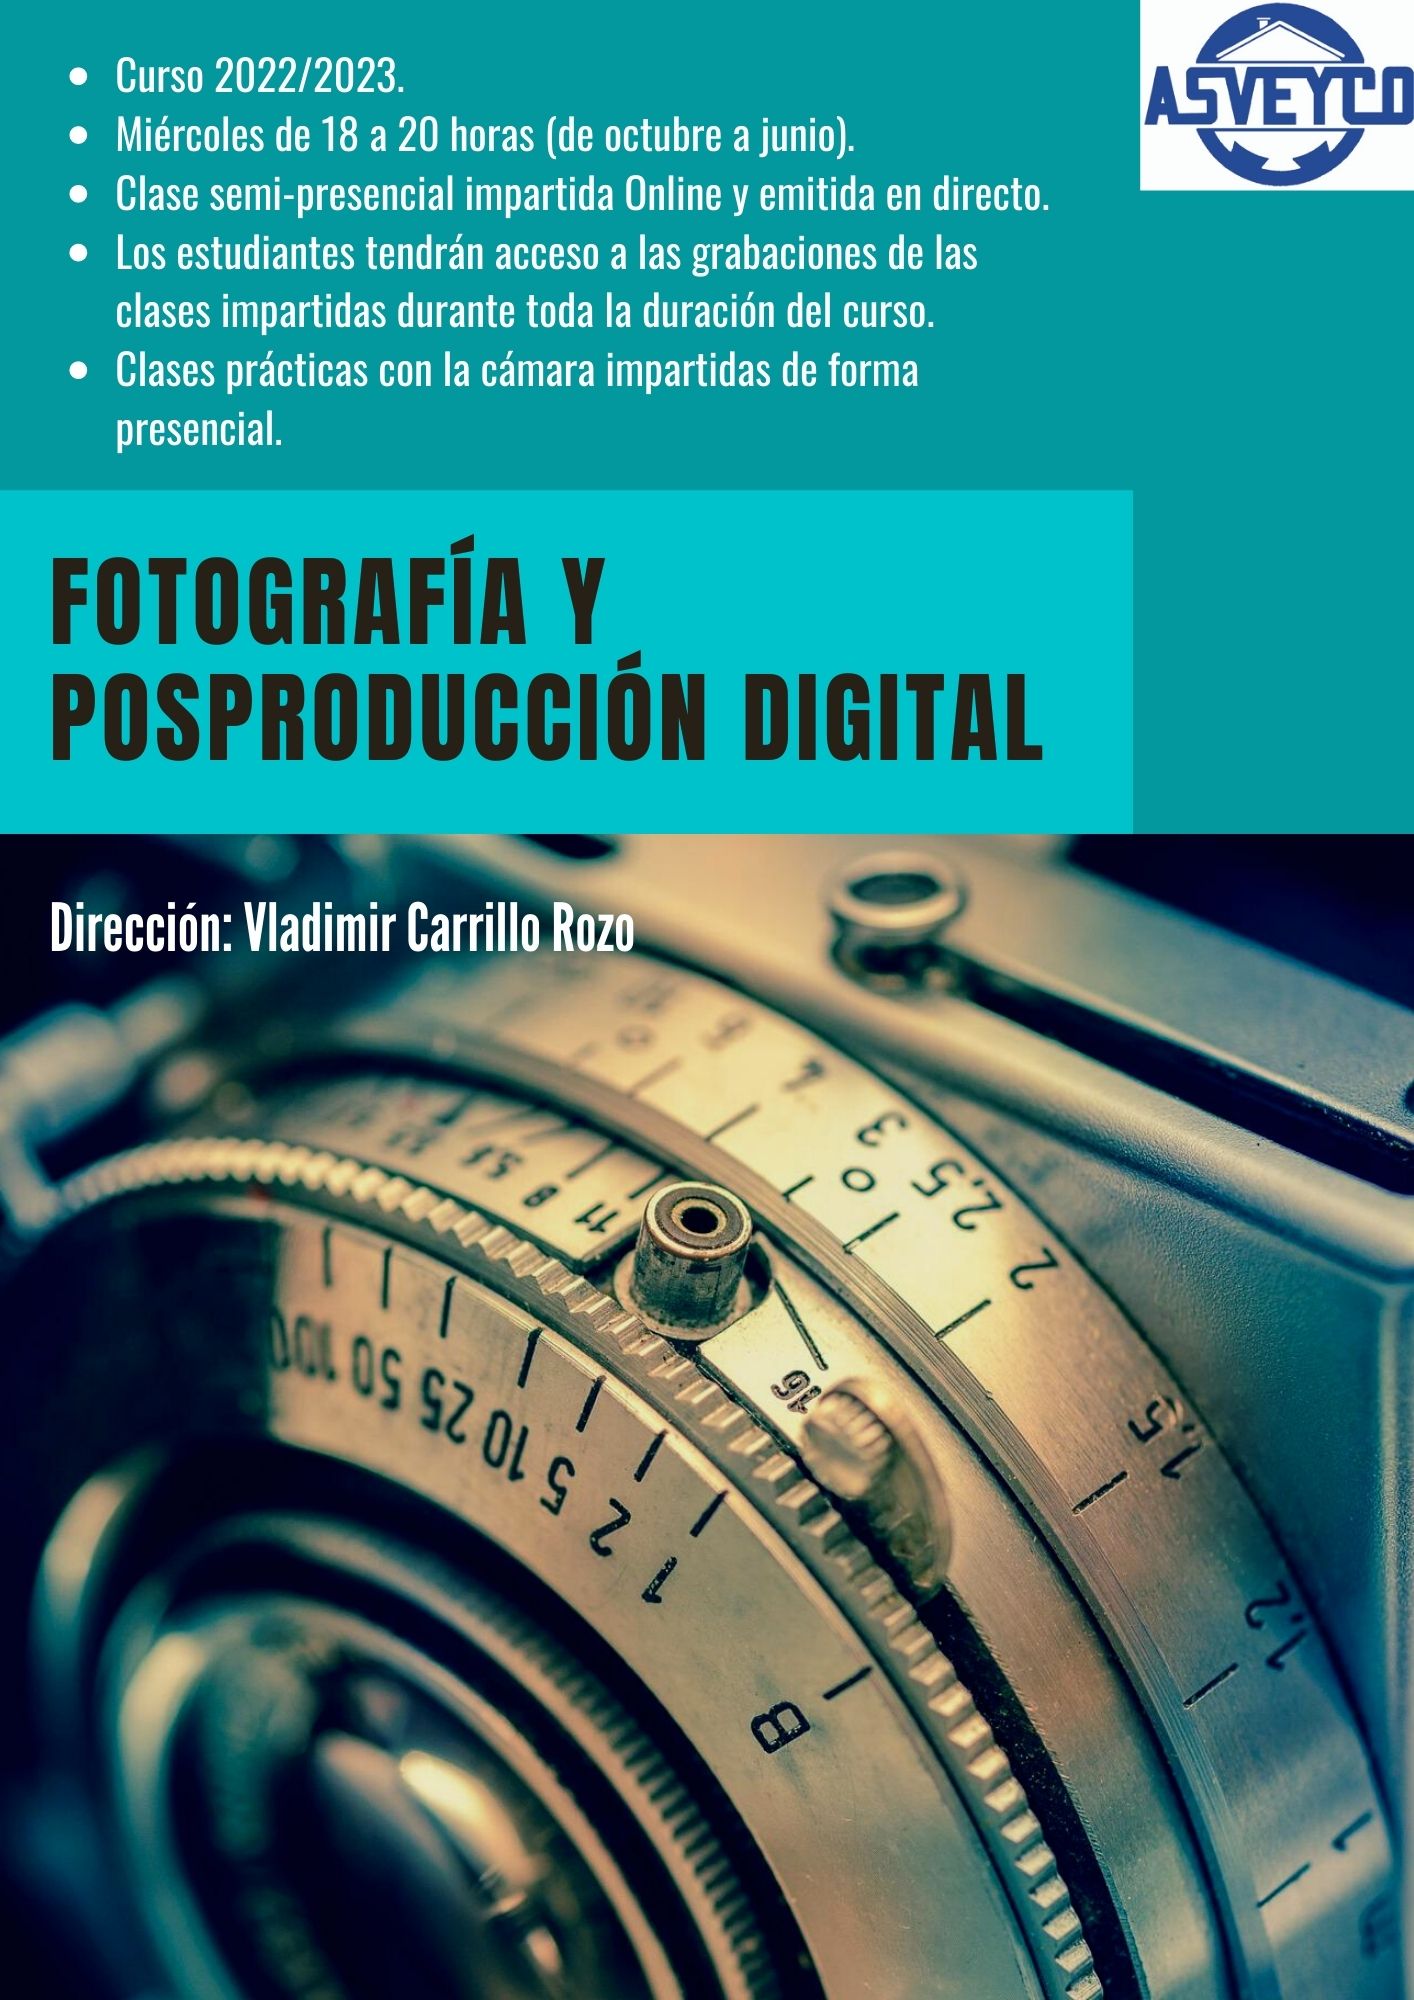 CURSO DE FOTOGRAFÍA Y POSPRODUCCIÓN DIGITAL